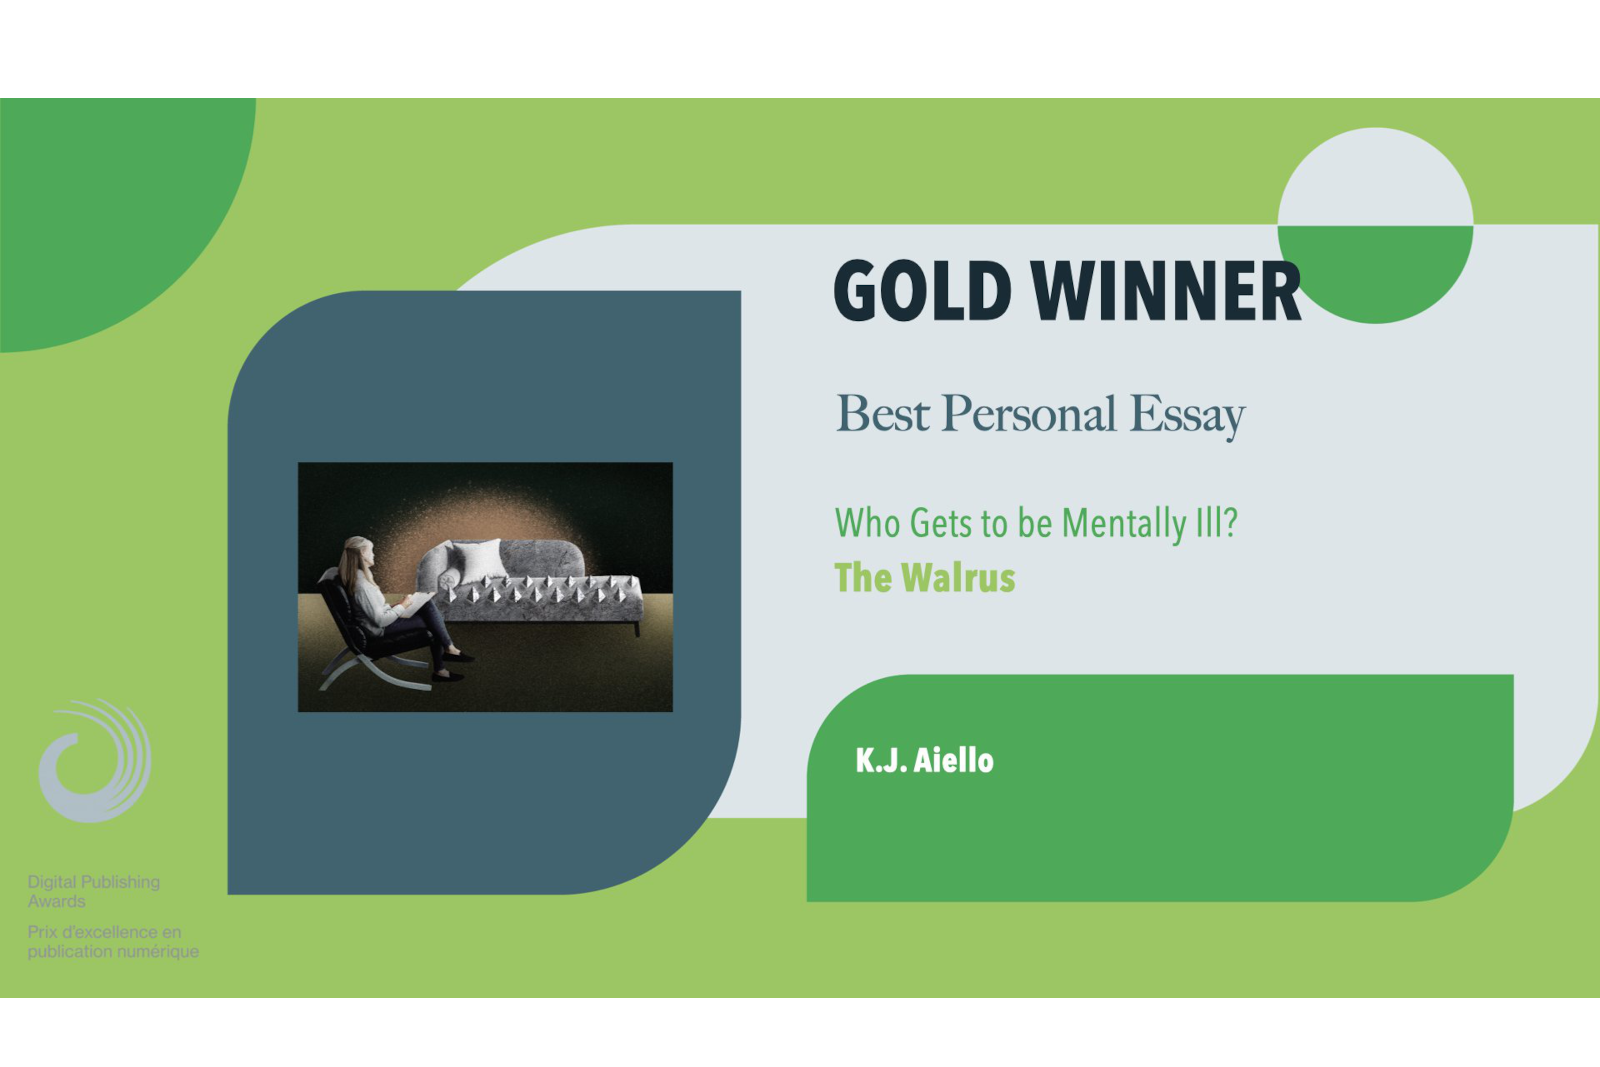 Das Walross gewinnt bei den Digital Publishing Awards 2023 GOLD für den besten persönlichen Essay